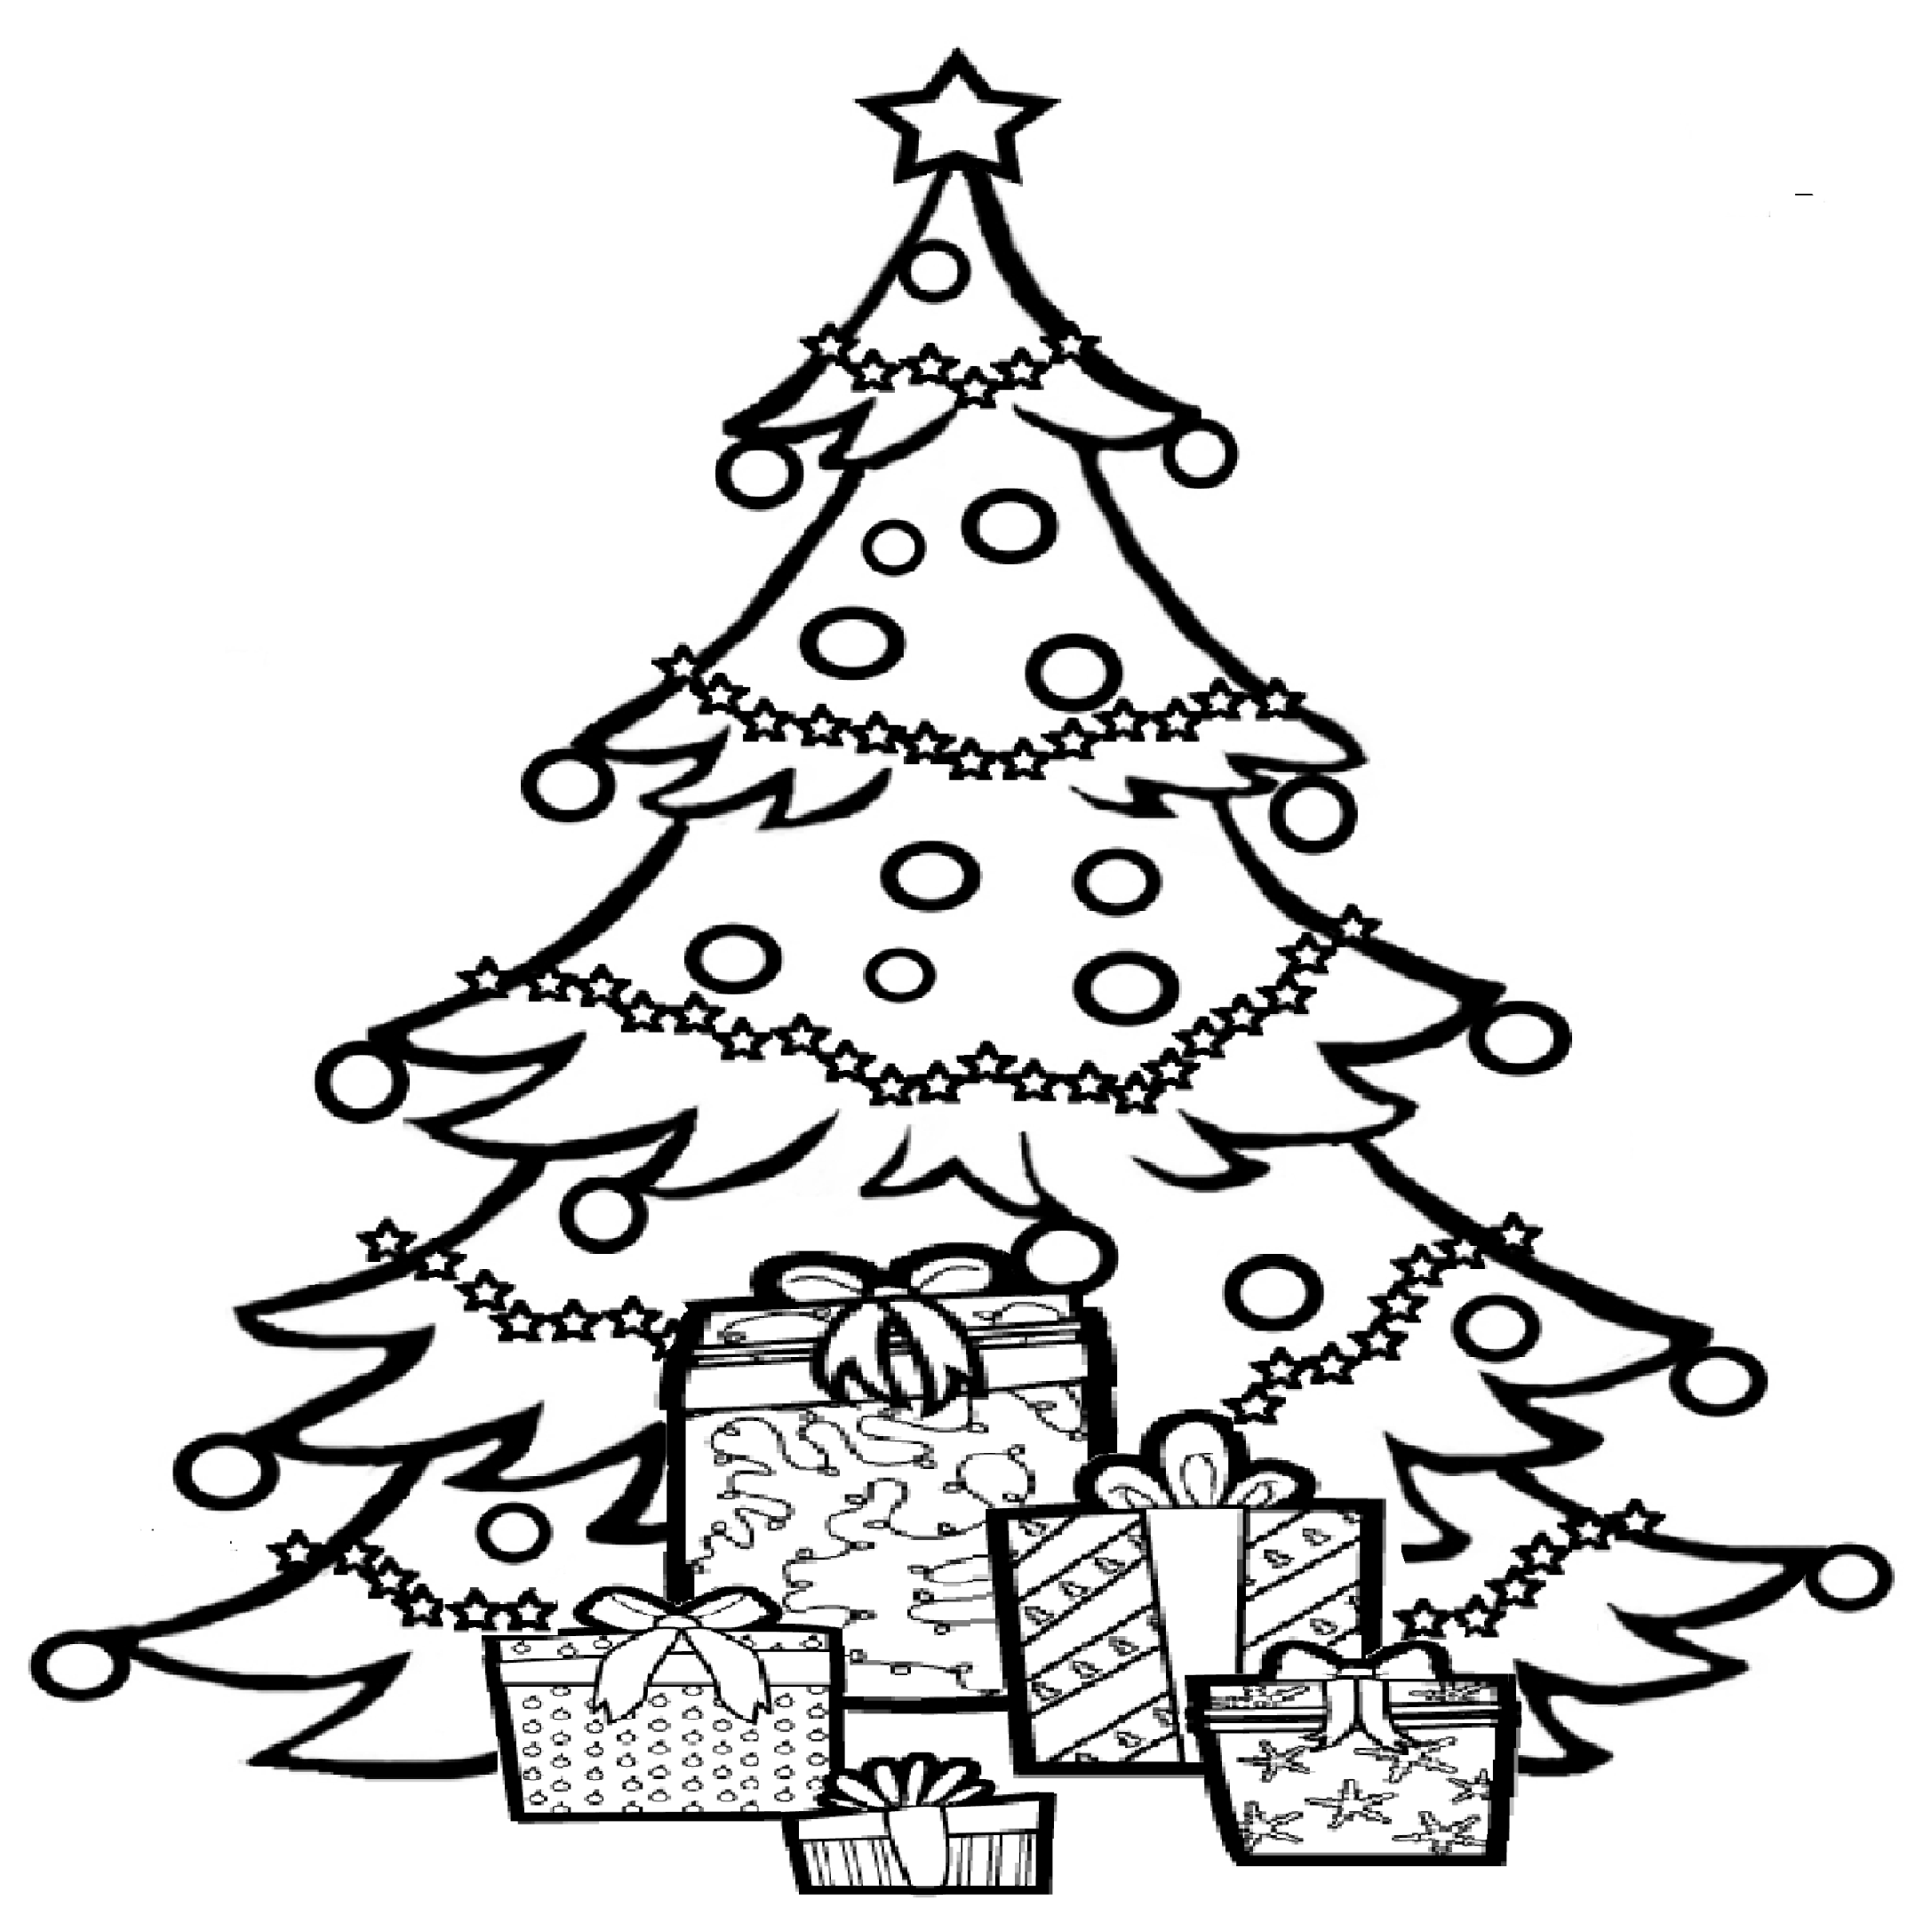 Juletræ med gaver